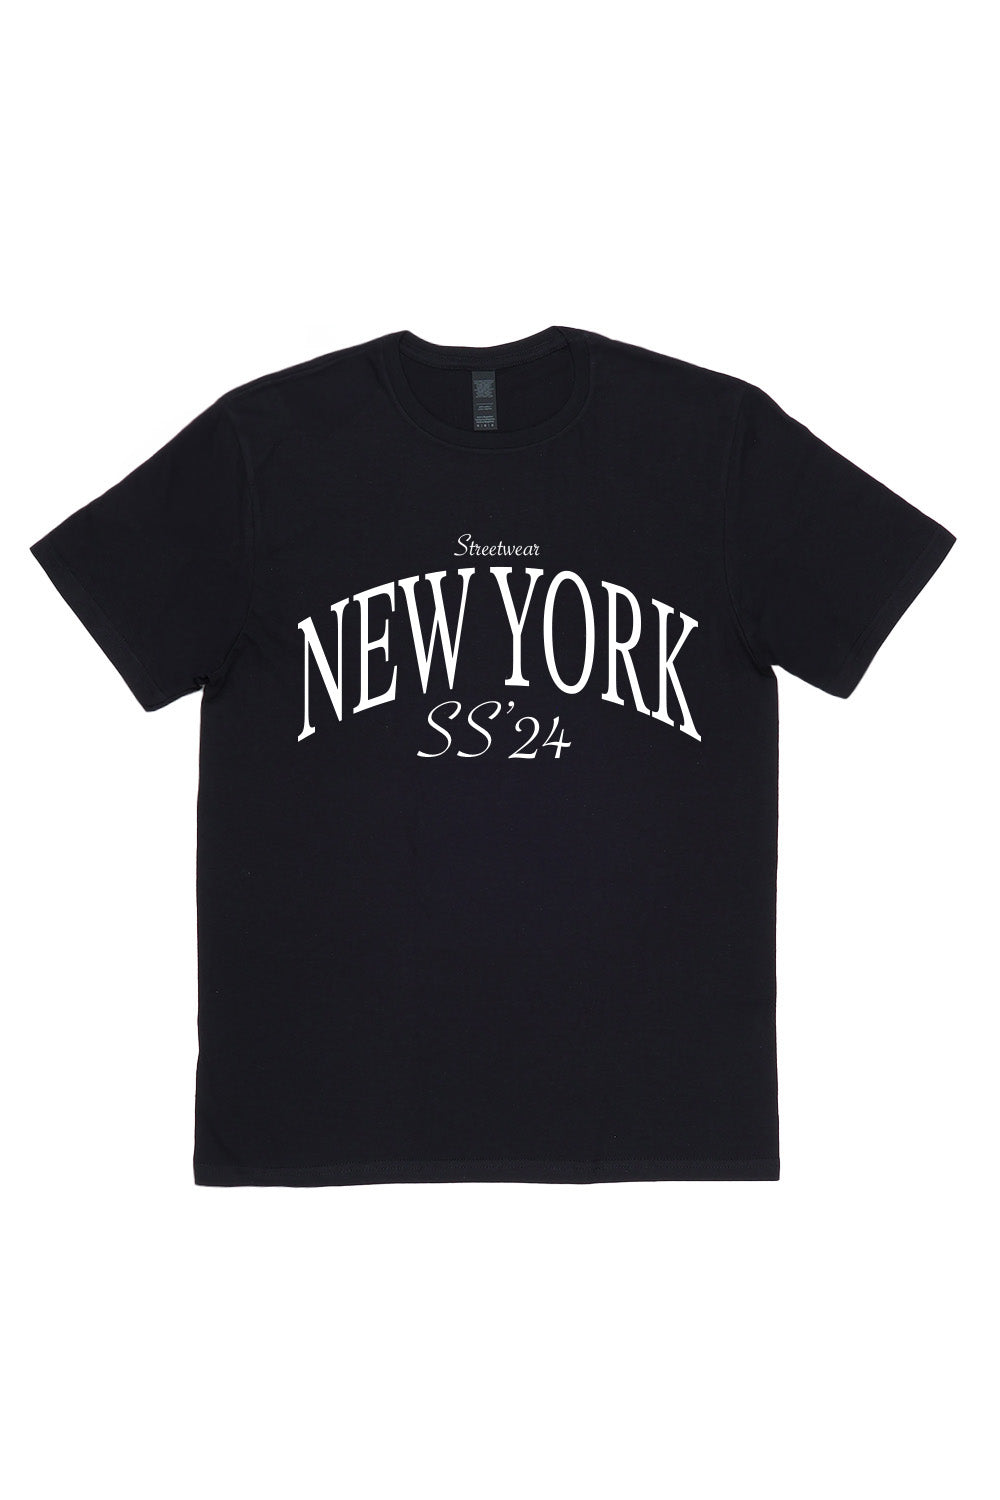 New York T-Shirt in Black (Custom Packs)